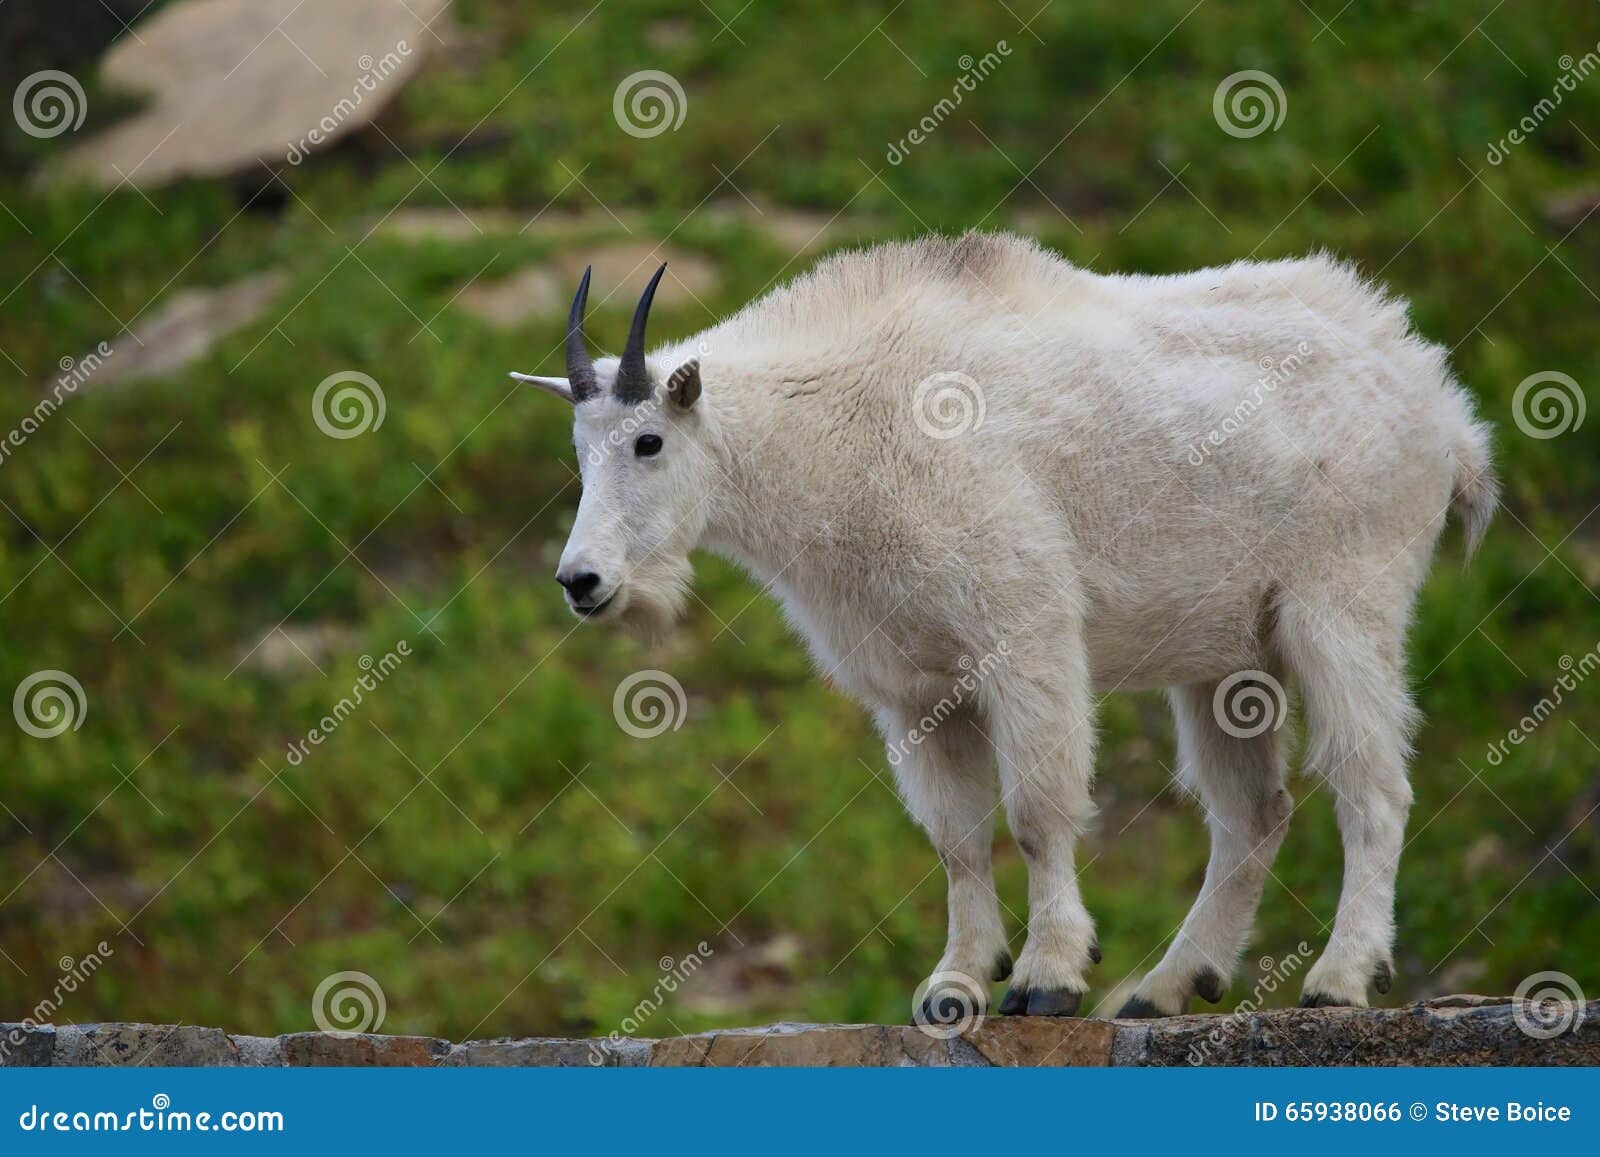 mountain goat at logan pass